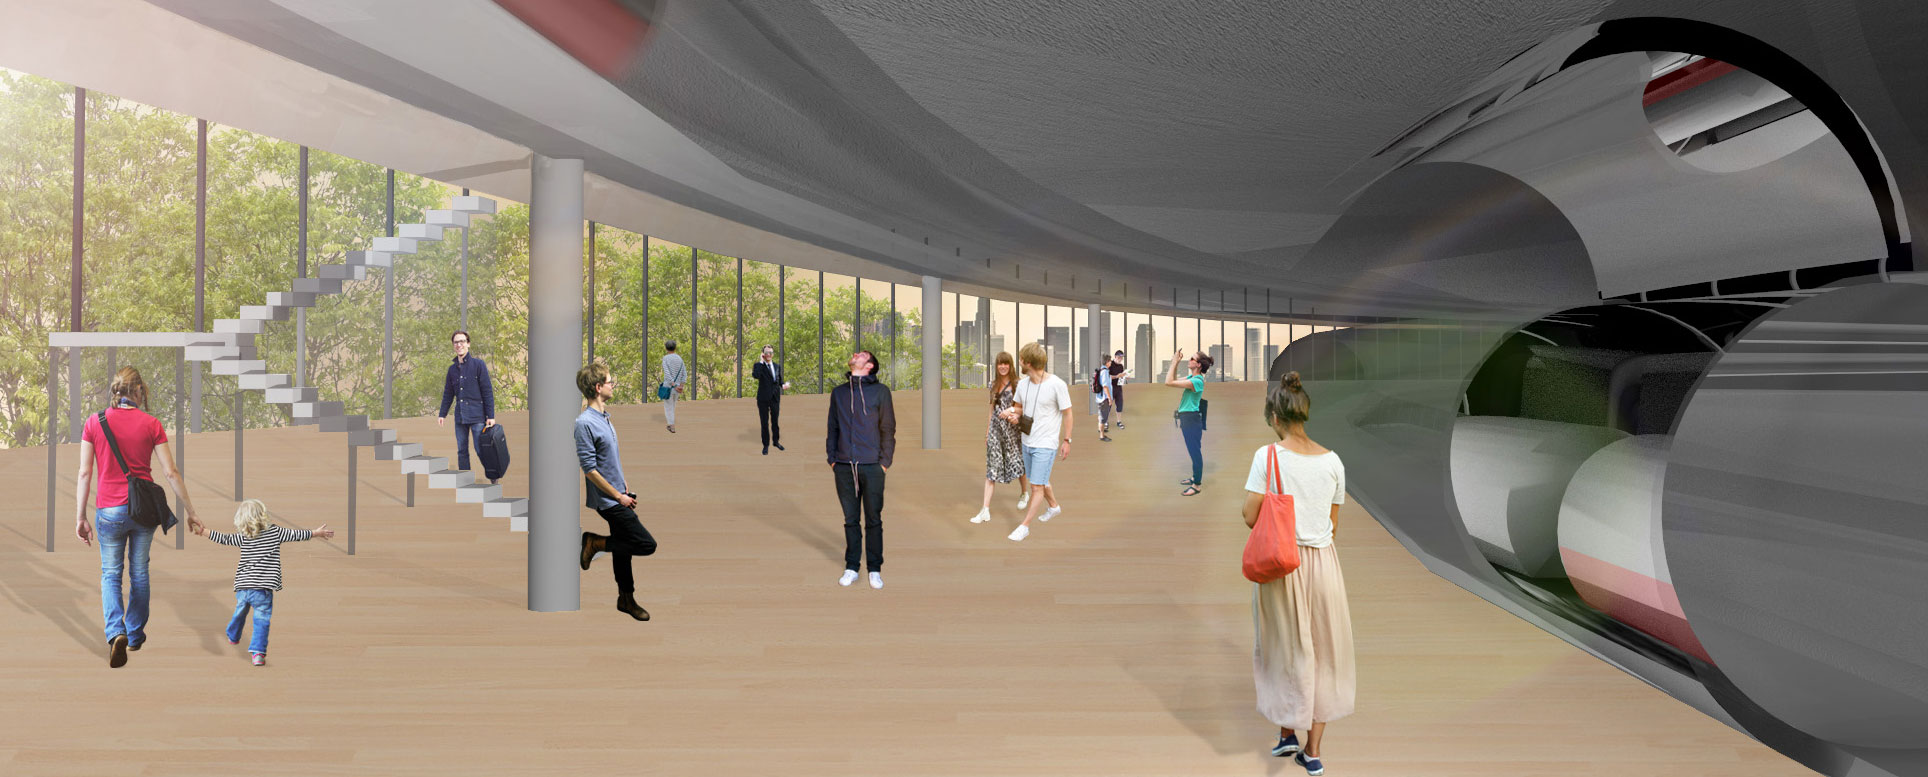 Digital rendering of Hyperloop Alpha might look like. People walking around talking and looking at the ceiling